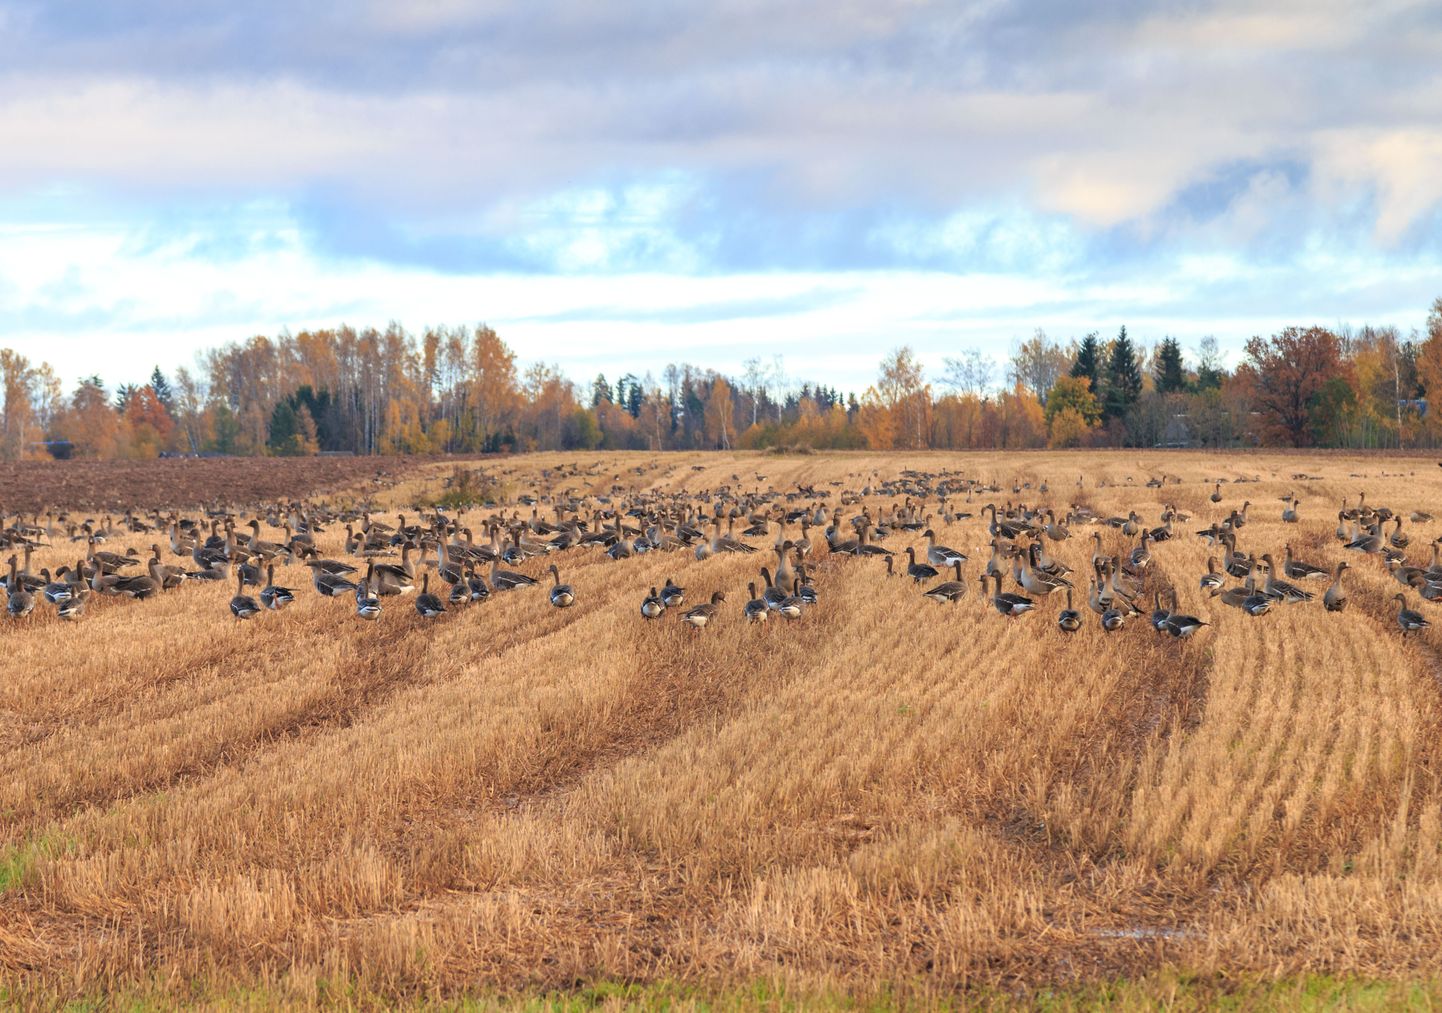 Rändlinnud, linnud rändel
Haned põllul

Foto Arvo Meeks/Valgamaalane